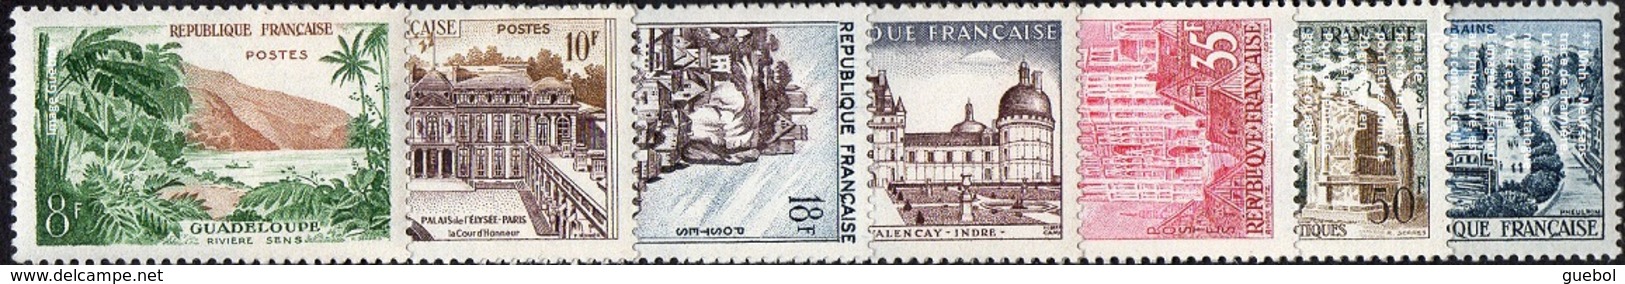 France N° 1125 à 1131 ** Sites, Monuments - Guadeloupe, Elysée, Beynac, Valencay, Rouen, St_Rémy, Evian - Unused Stamps